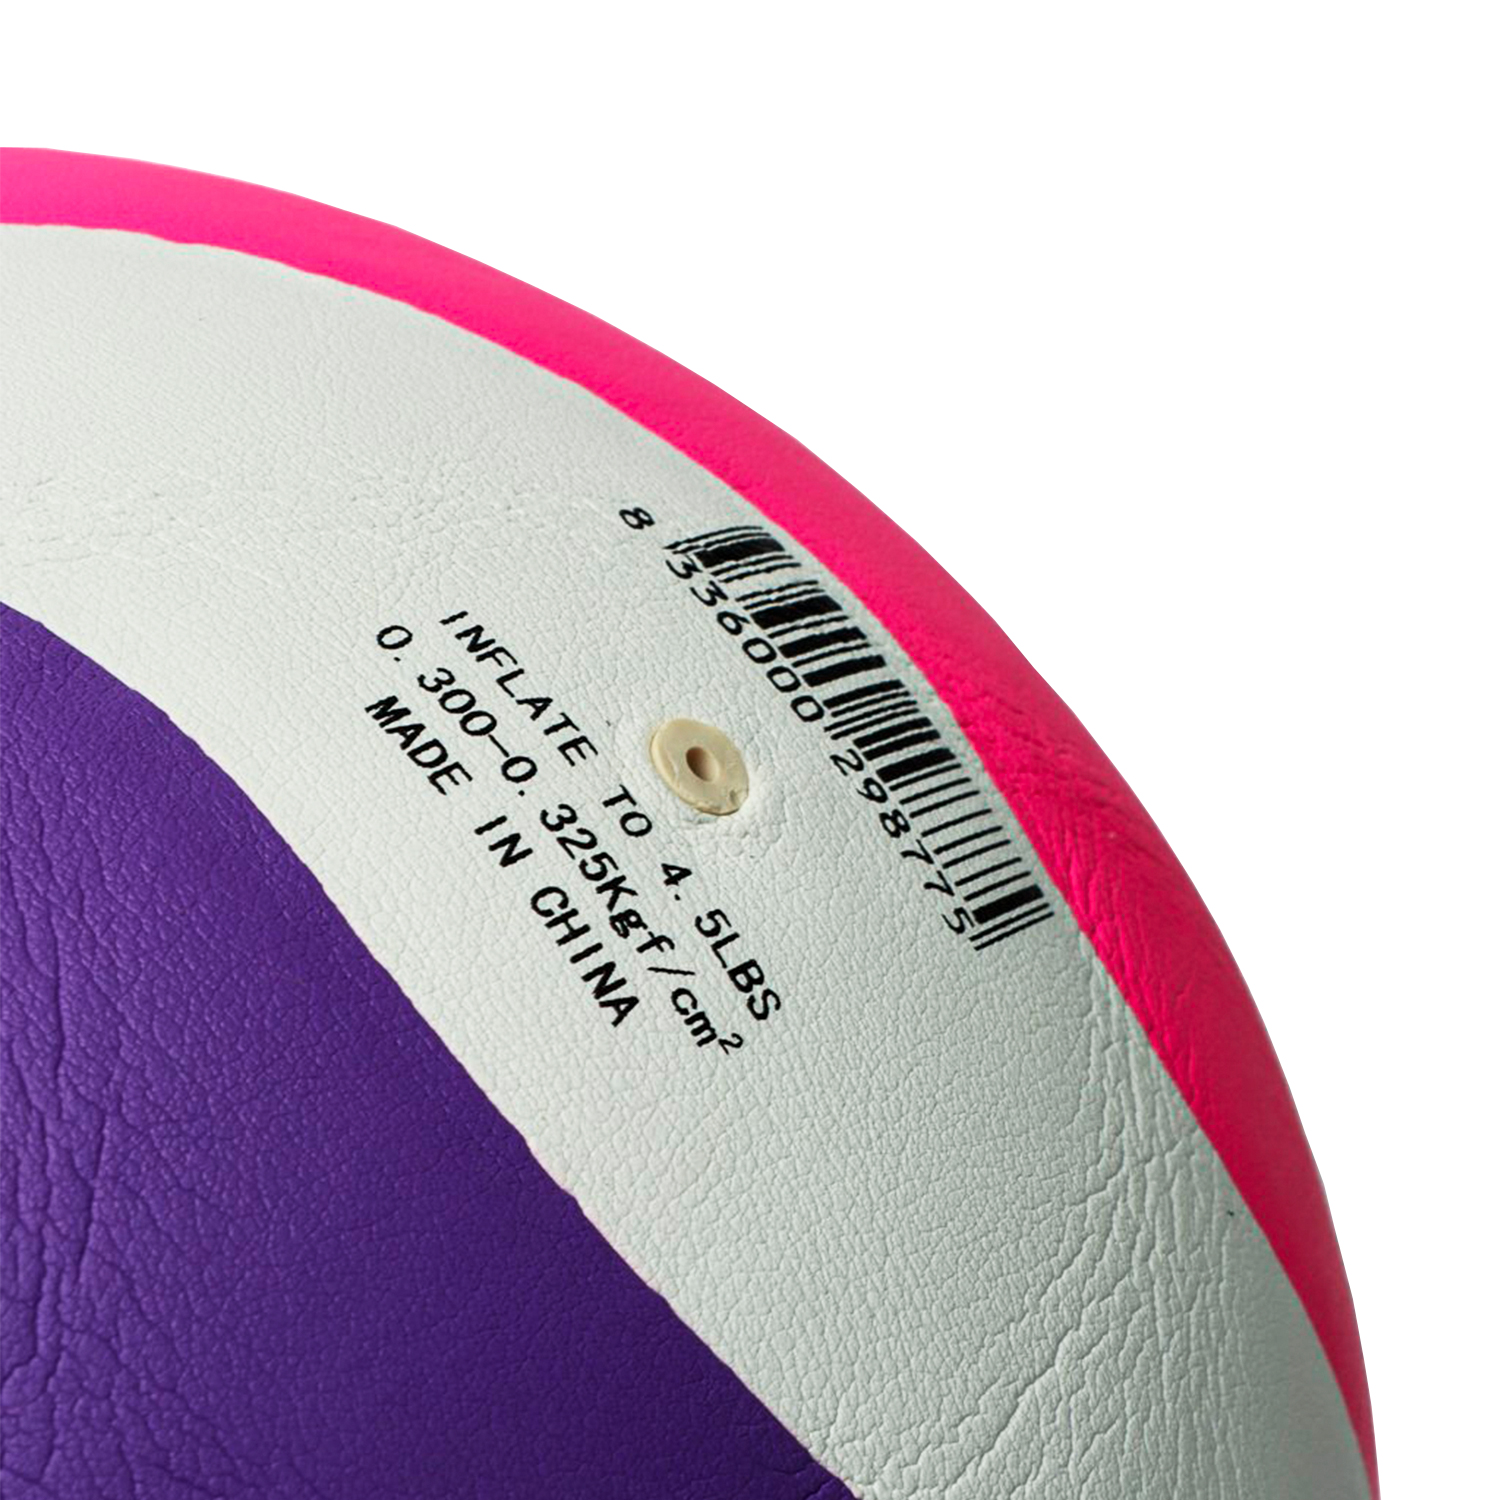 волейбольный-мяч-powergym-8000, купить волейбольный мяч